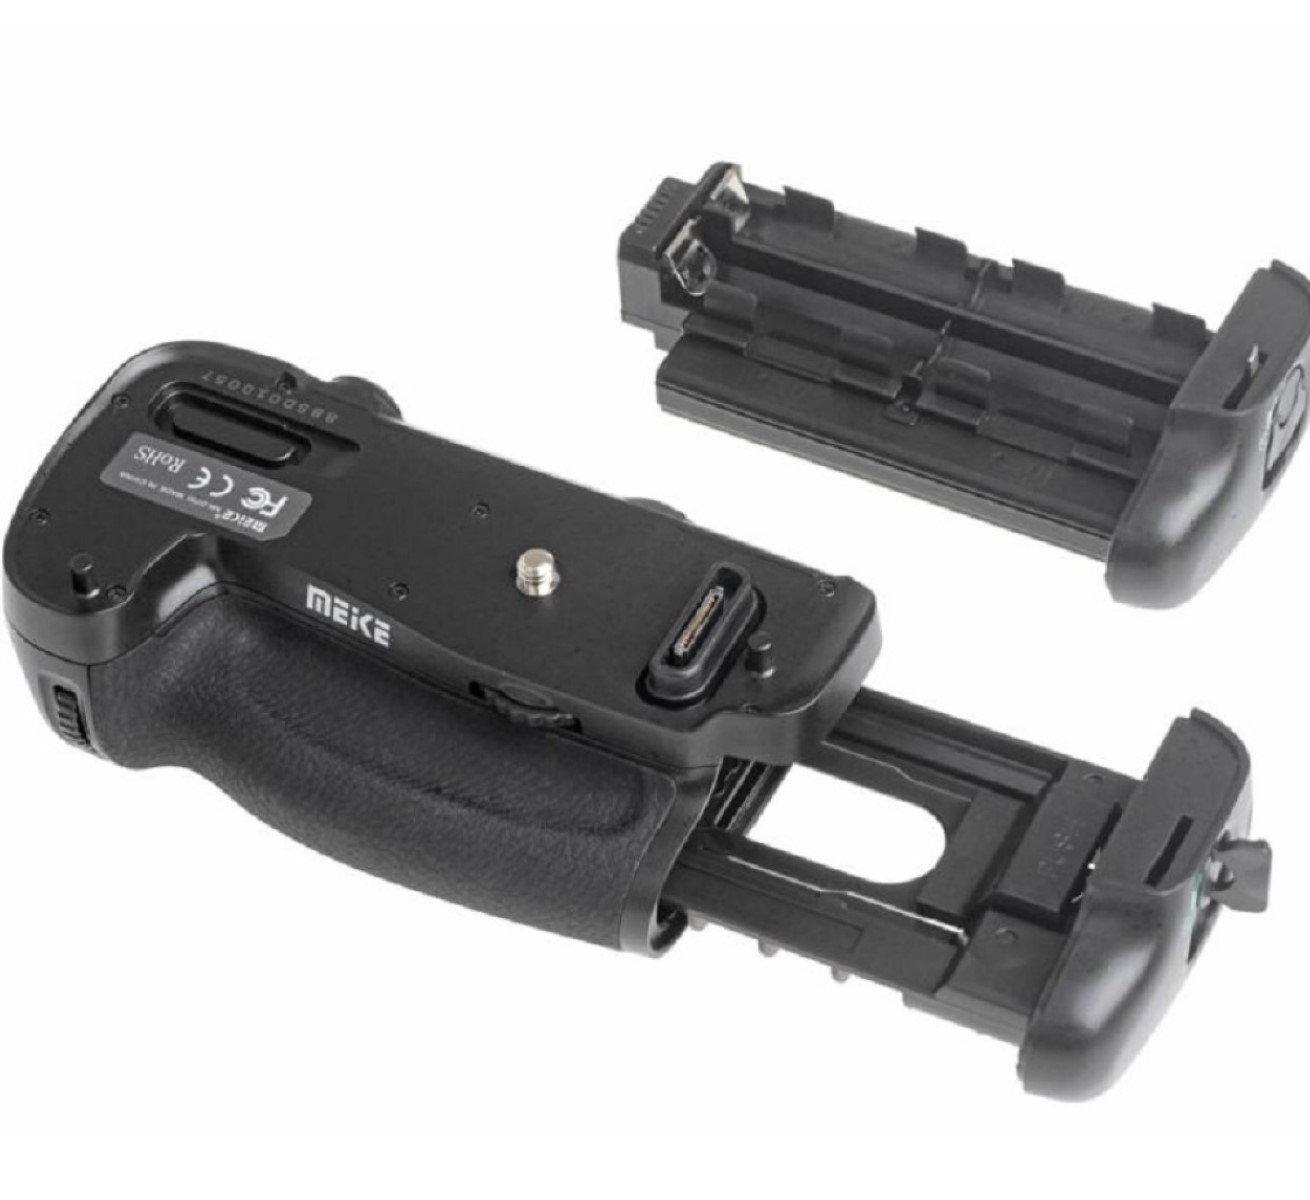 D750 Batteriegriff, MB-D16 wie D750 Funk-Timer-Fernauslöser Black, MK-DR750, passend Nikon Nikon mit Batteriegriff für für AYEX